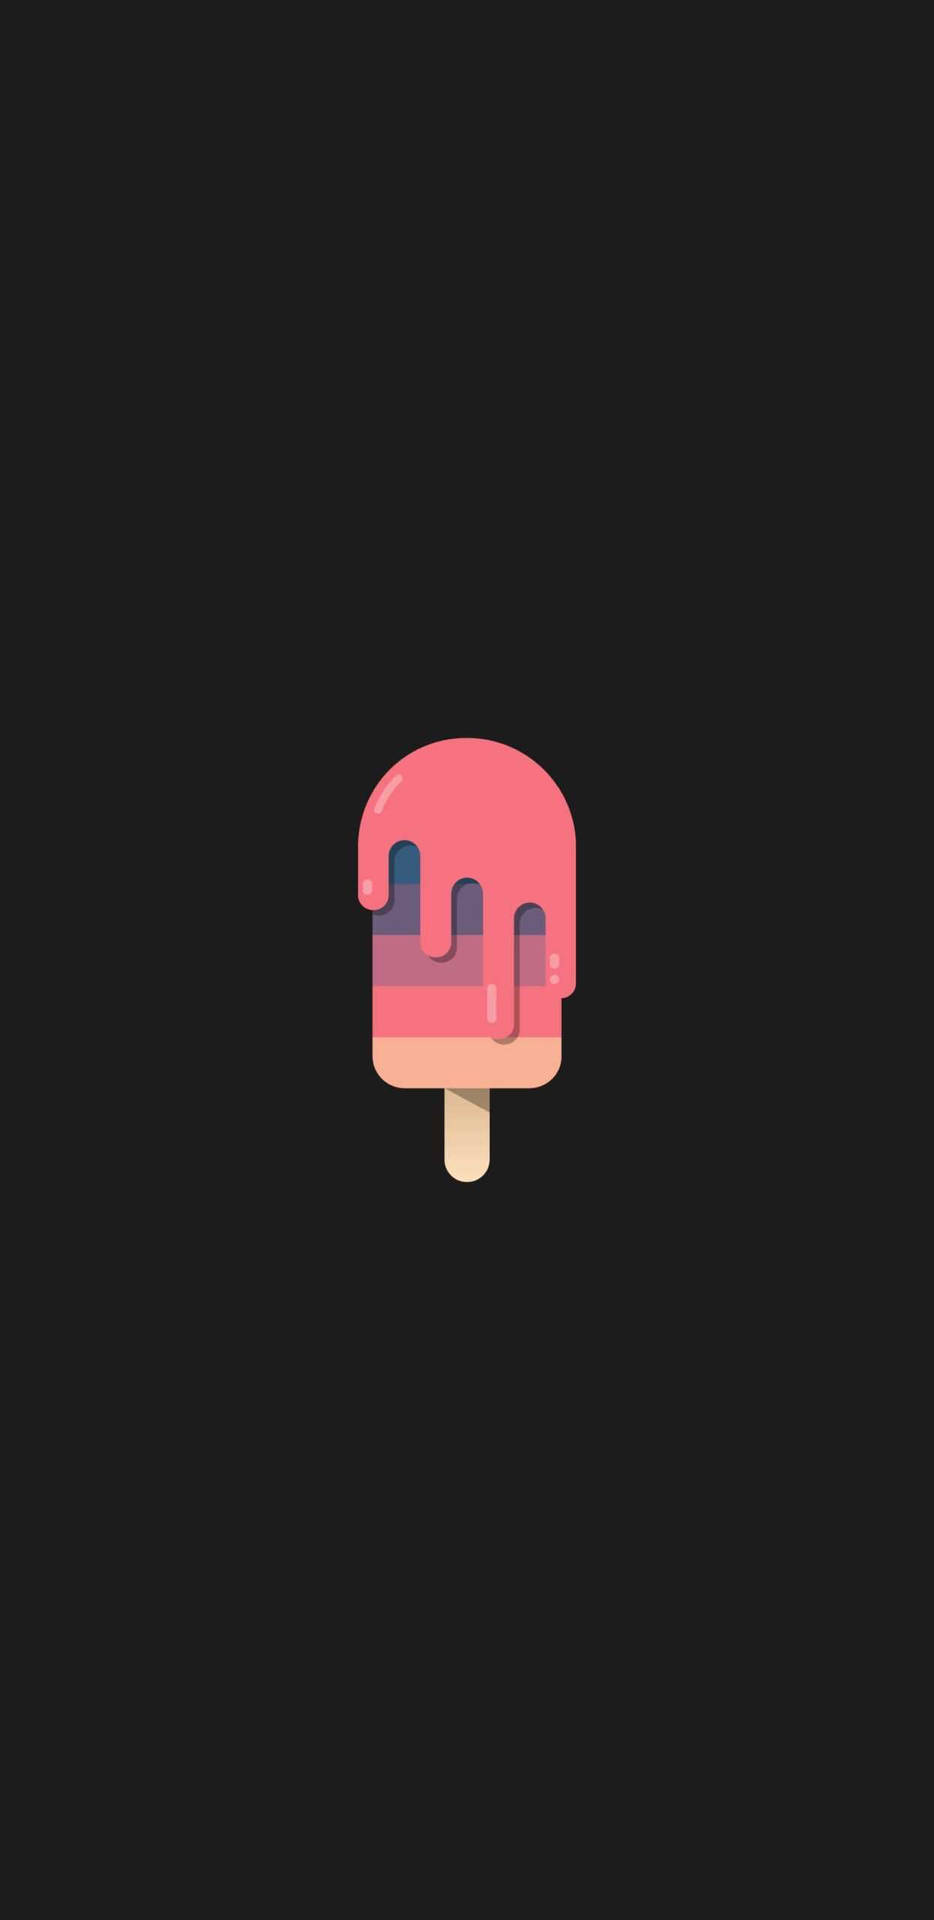 Popsicle Minimalist Phone